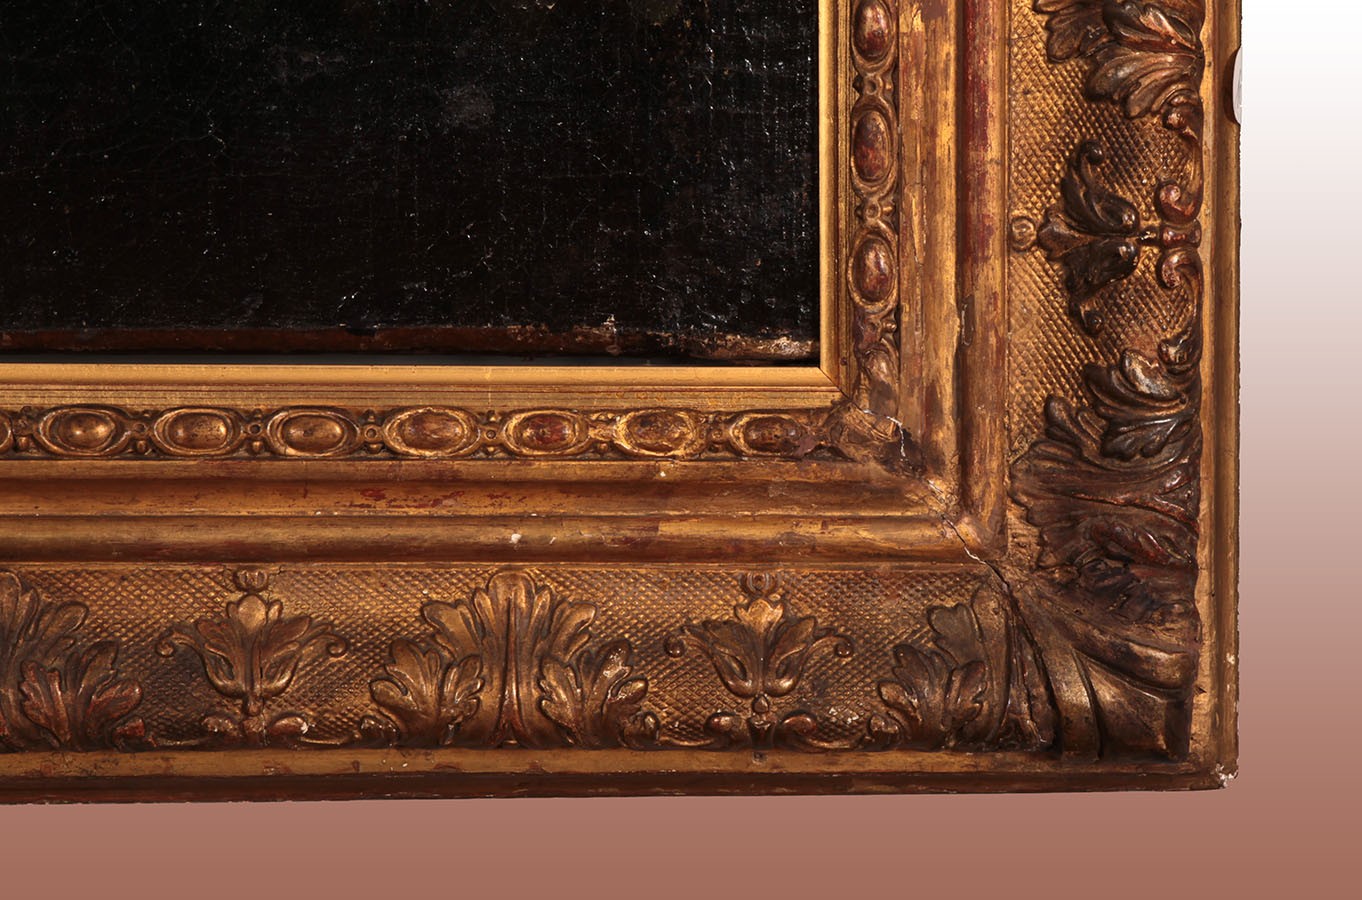 Antico olio su tela italiano del 1700 firmato fratelli Raposo 